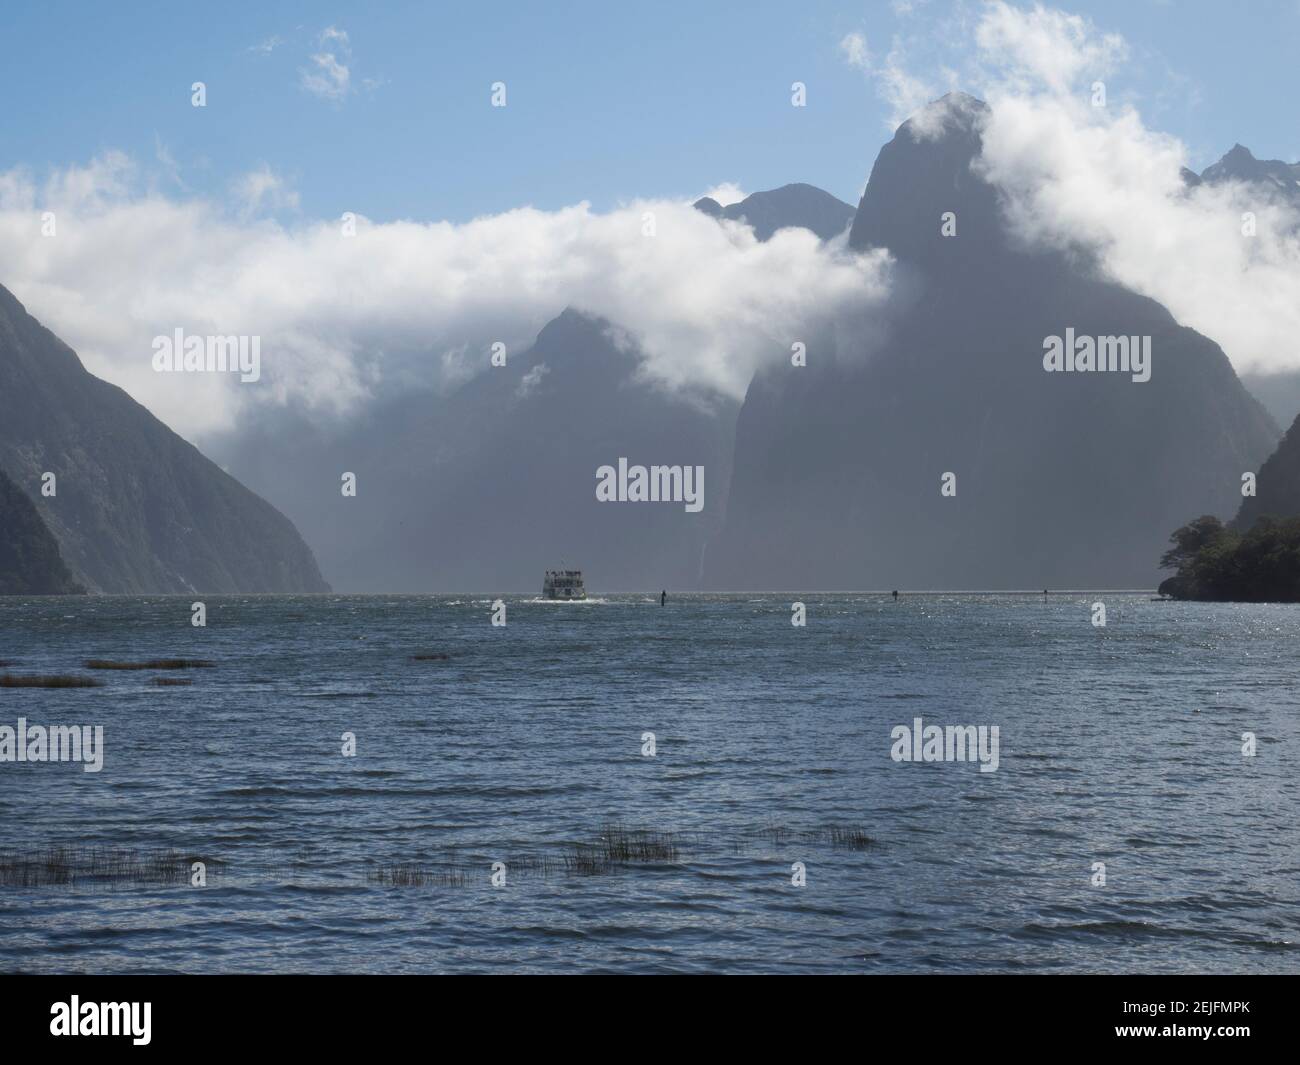 Bateau de touristes dans la mer, Milford Sound, South Island, Nouvelle-Zélande Banque D'Images